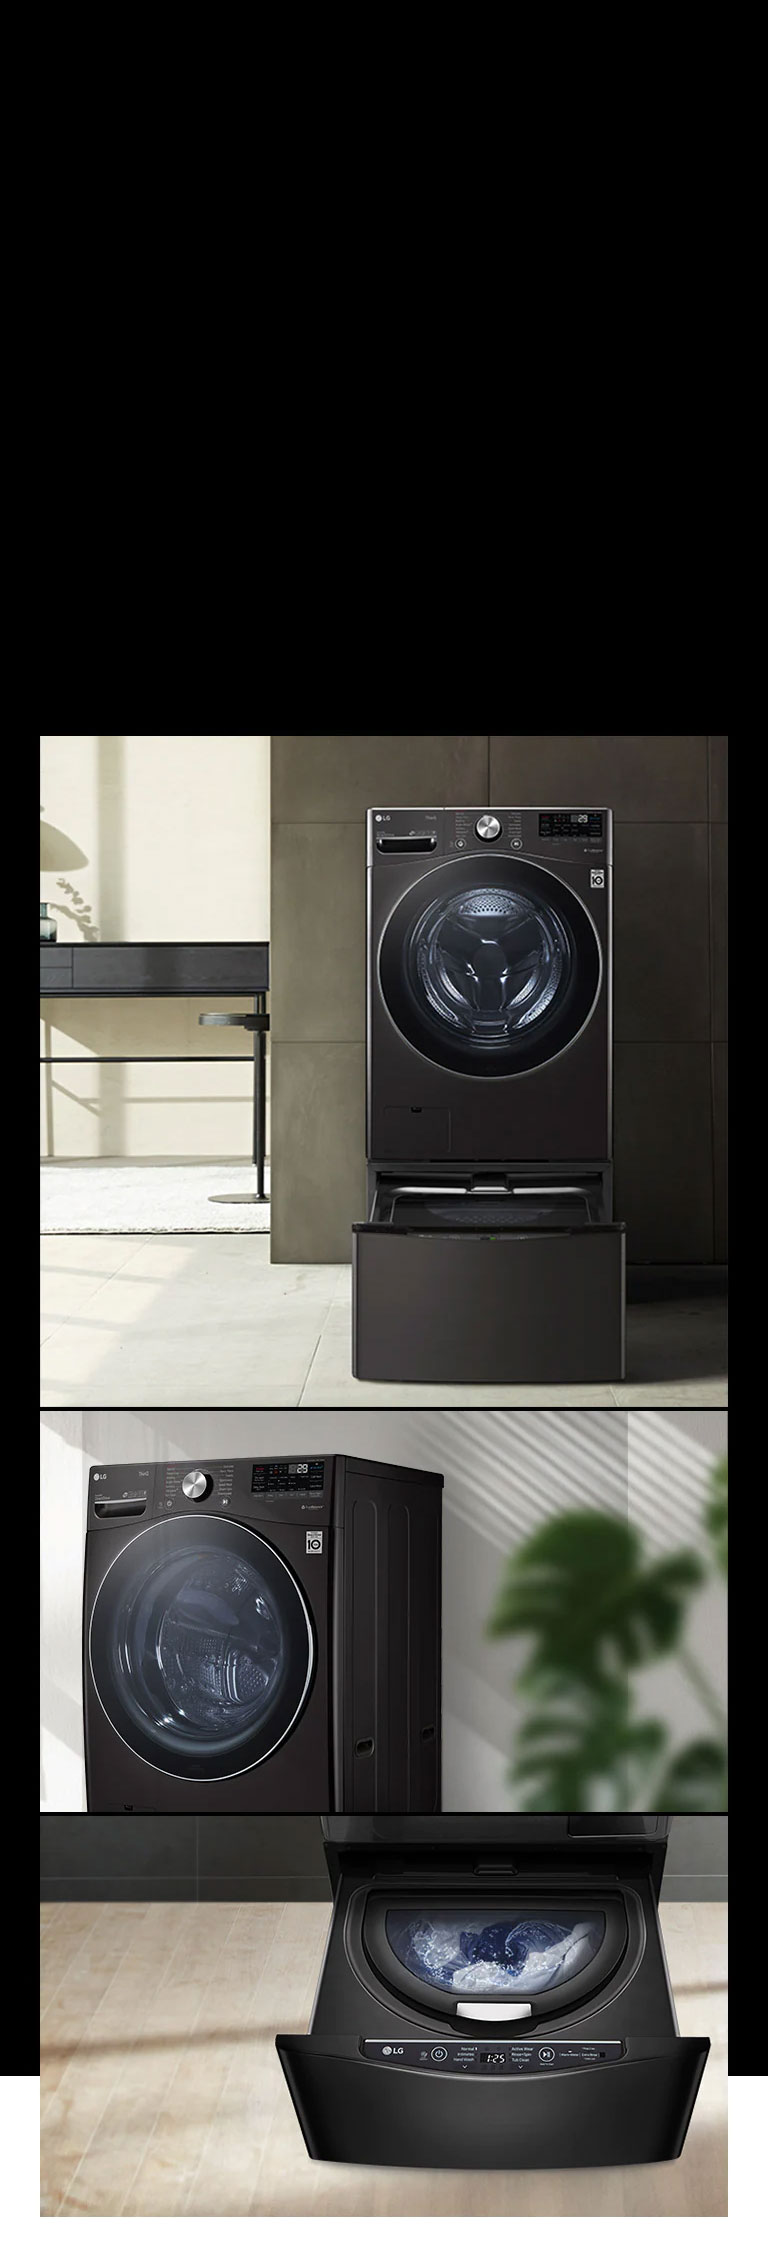 Compatible con la lavadora pedestal TWINWashTM Mini para que puedas lavar dos cargas a la vez.